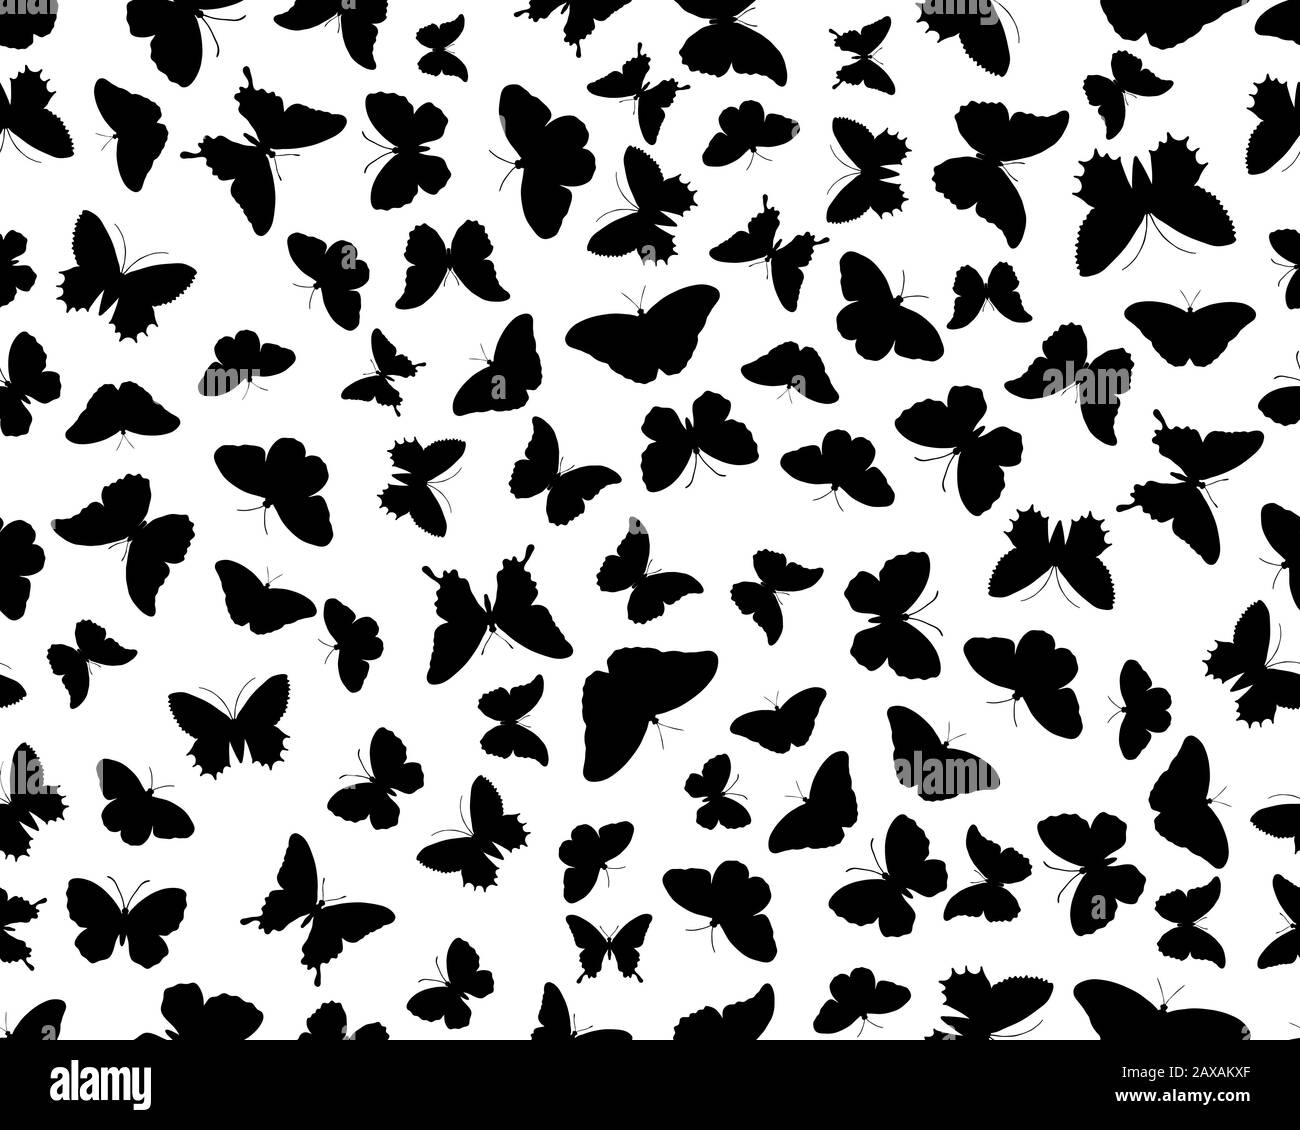 Nahtloses Muster mit schwarzen Silhouetten von Schmetterlingen auf weißem Hintergrund Nahtloses Muster mit schwarzen Silhouetten von Schmetterlingen auf weißem Hintergrund Stockfoto